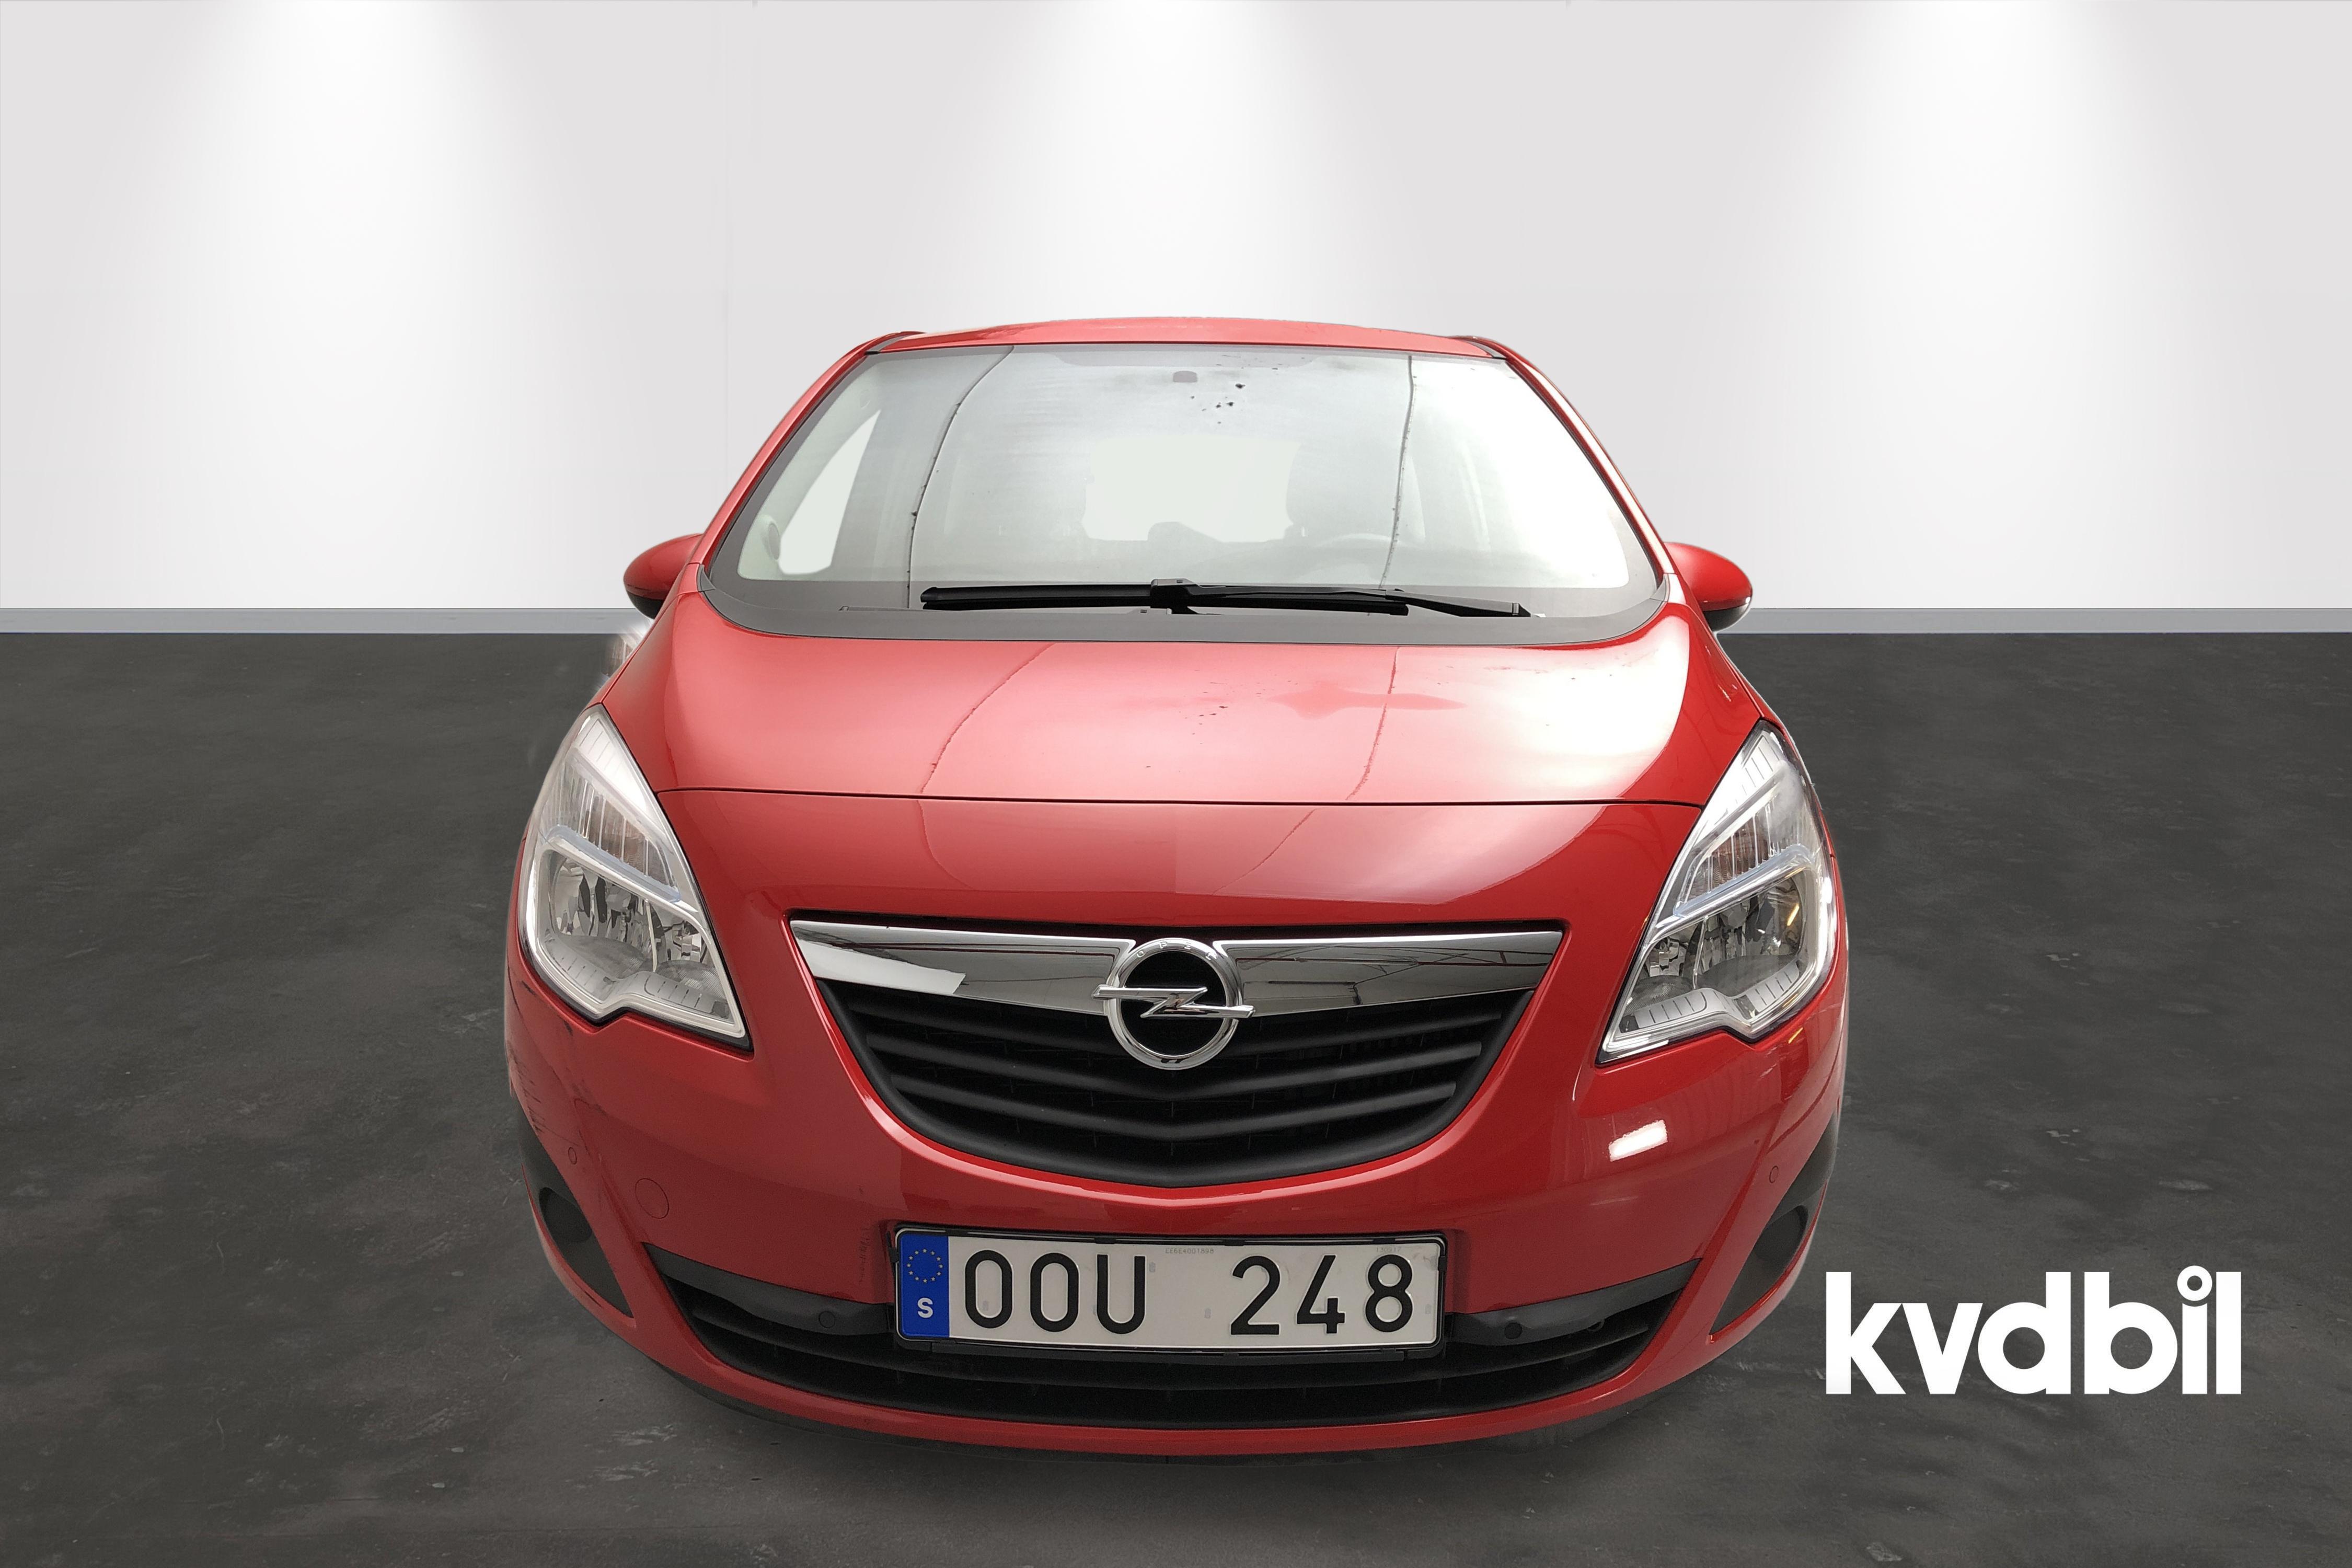 Opel Meriva 1.4 Turbo ECOTEC (140hk) - 0 mil - Manuell - röd - 2014